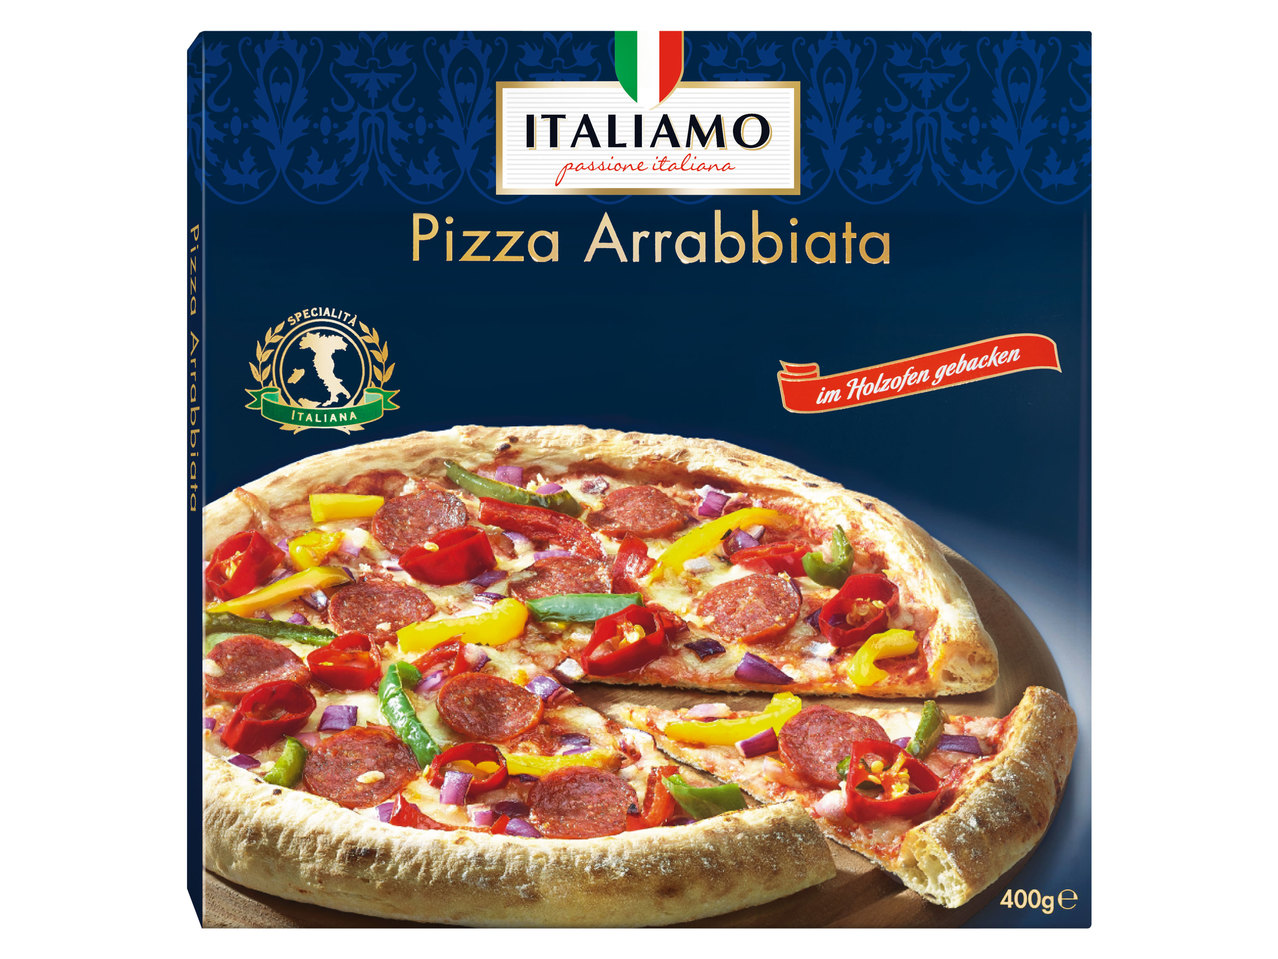 ITALIAMO Pizza Arrabbiata oder Quattro Formaggi